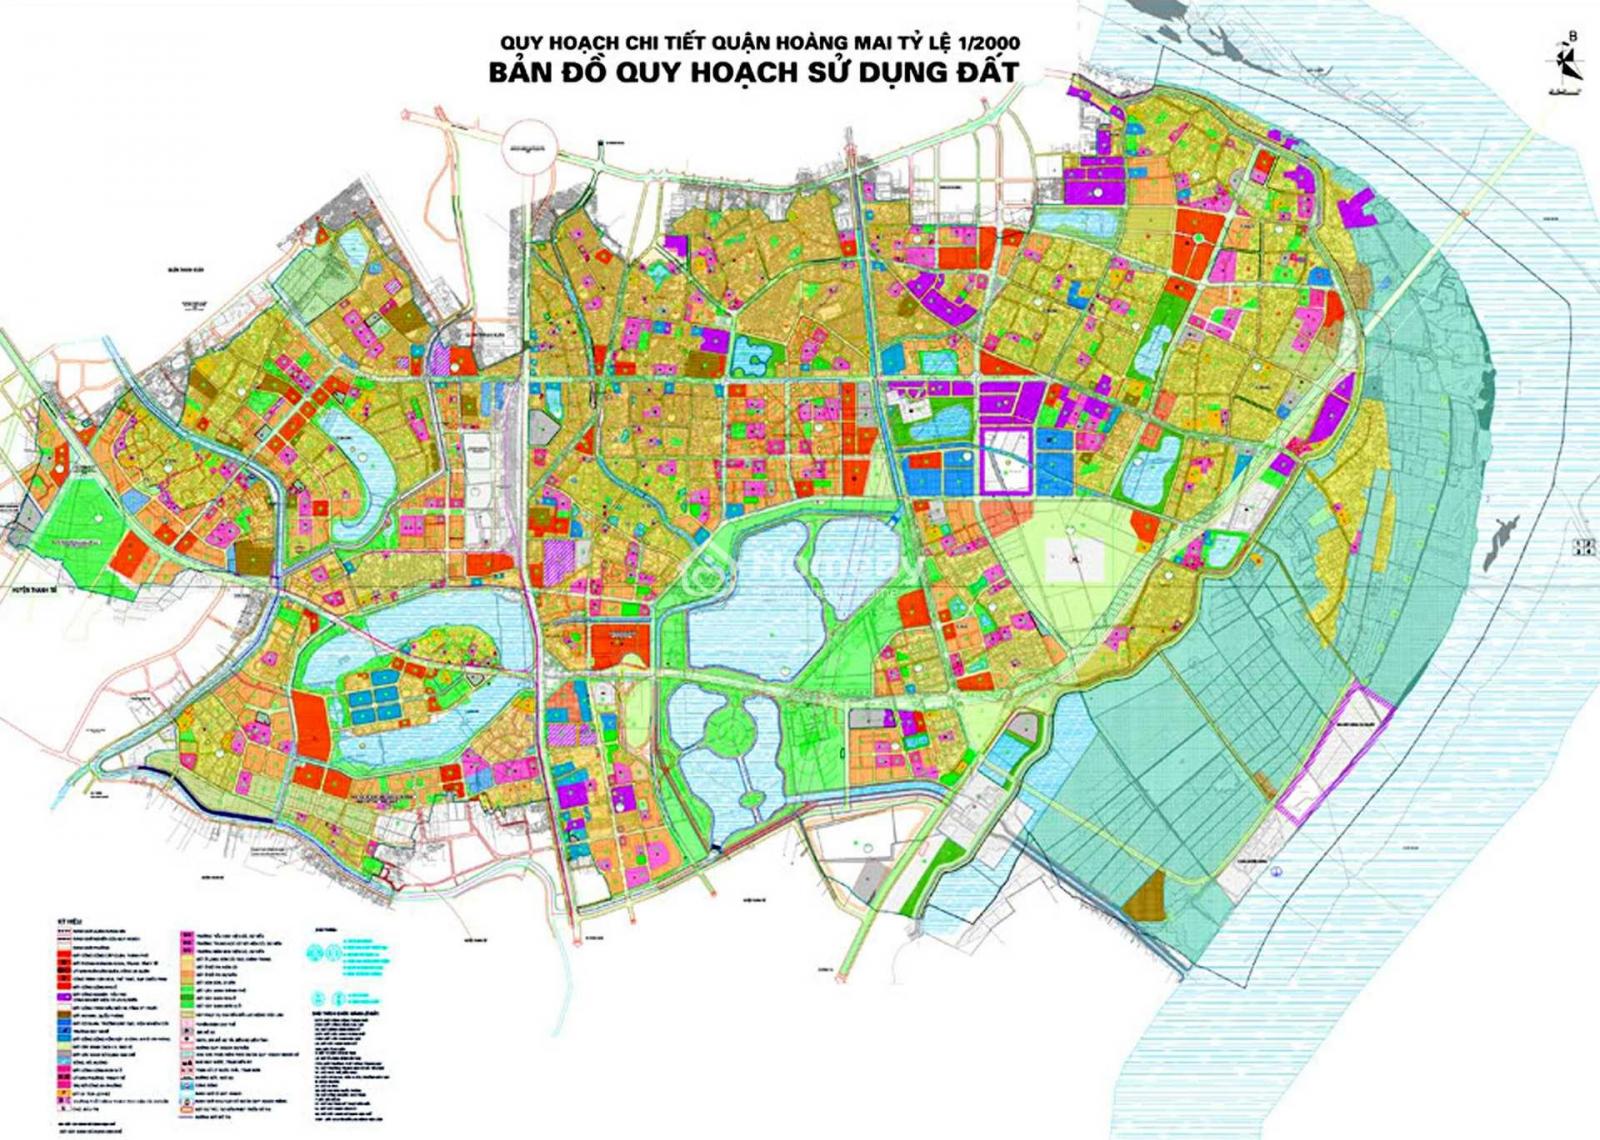 Cách đọc bản đồ quy hoạch sử dụng đất dựa trên ký hiệu, màu sắc - Viet Nam Smart City